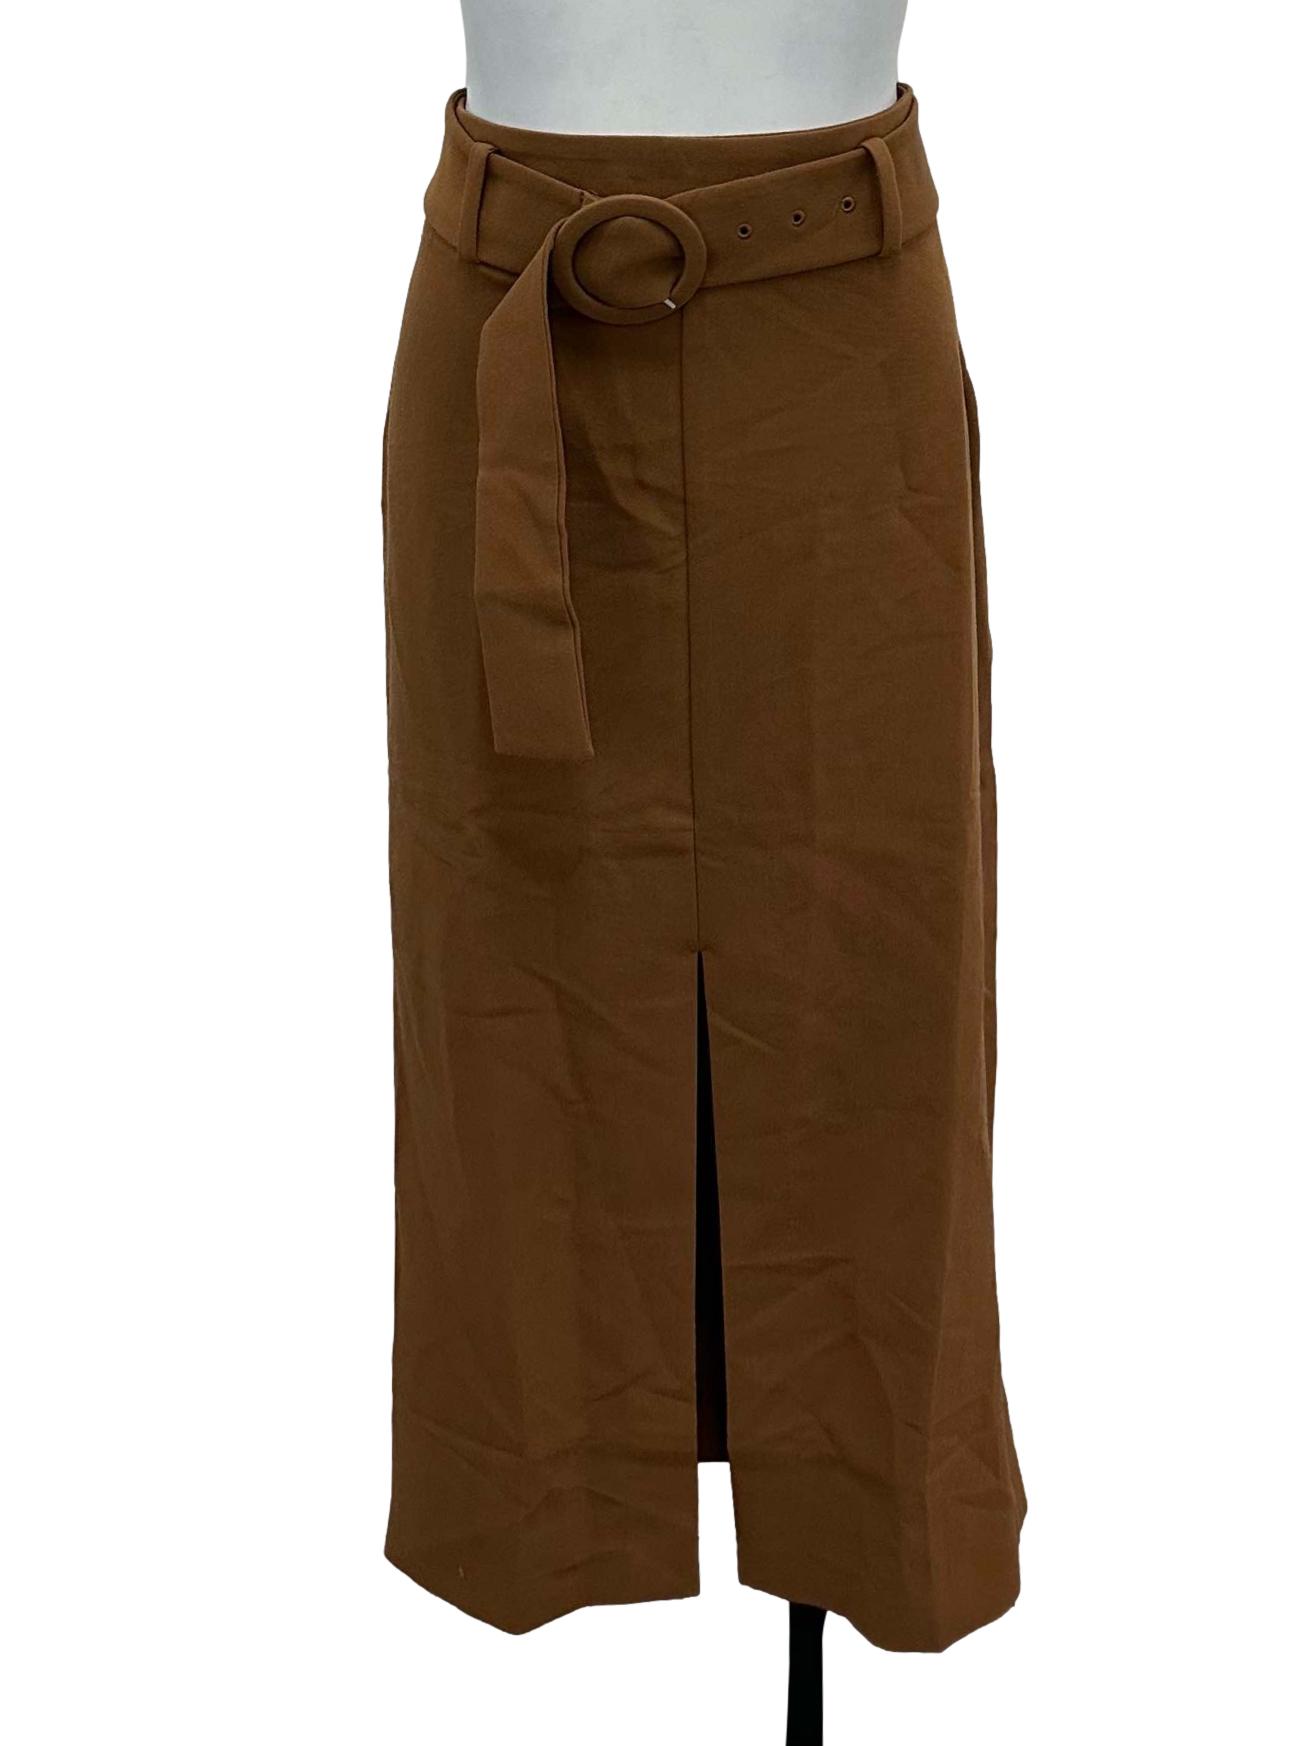 Brown Belted Slit Skirt